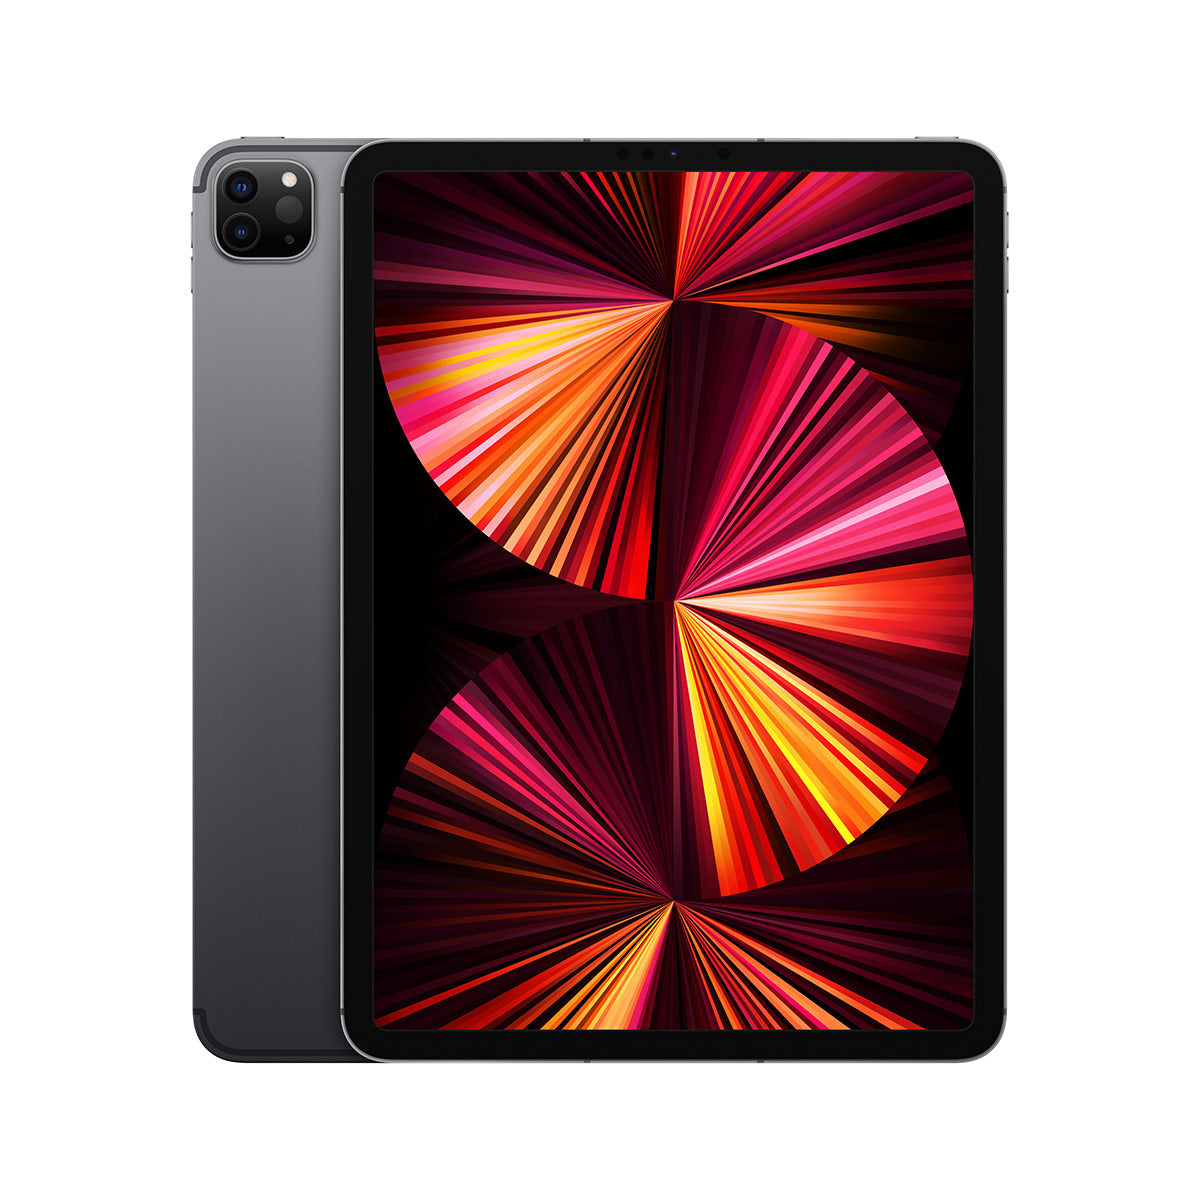 iPadpro 12.9" (512GB) wifi 2021 M1chip New